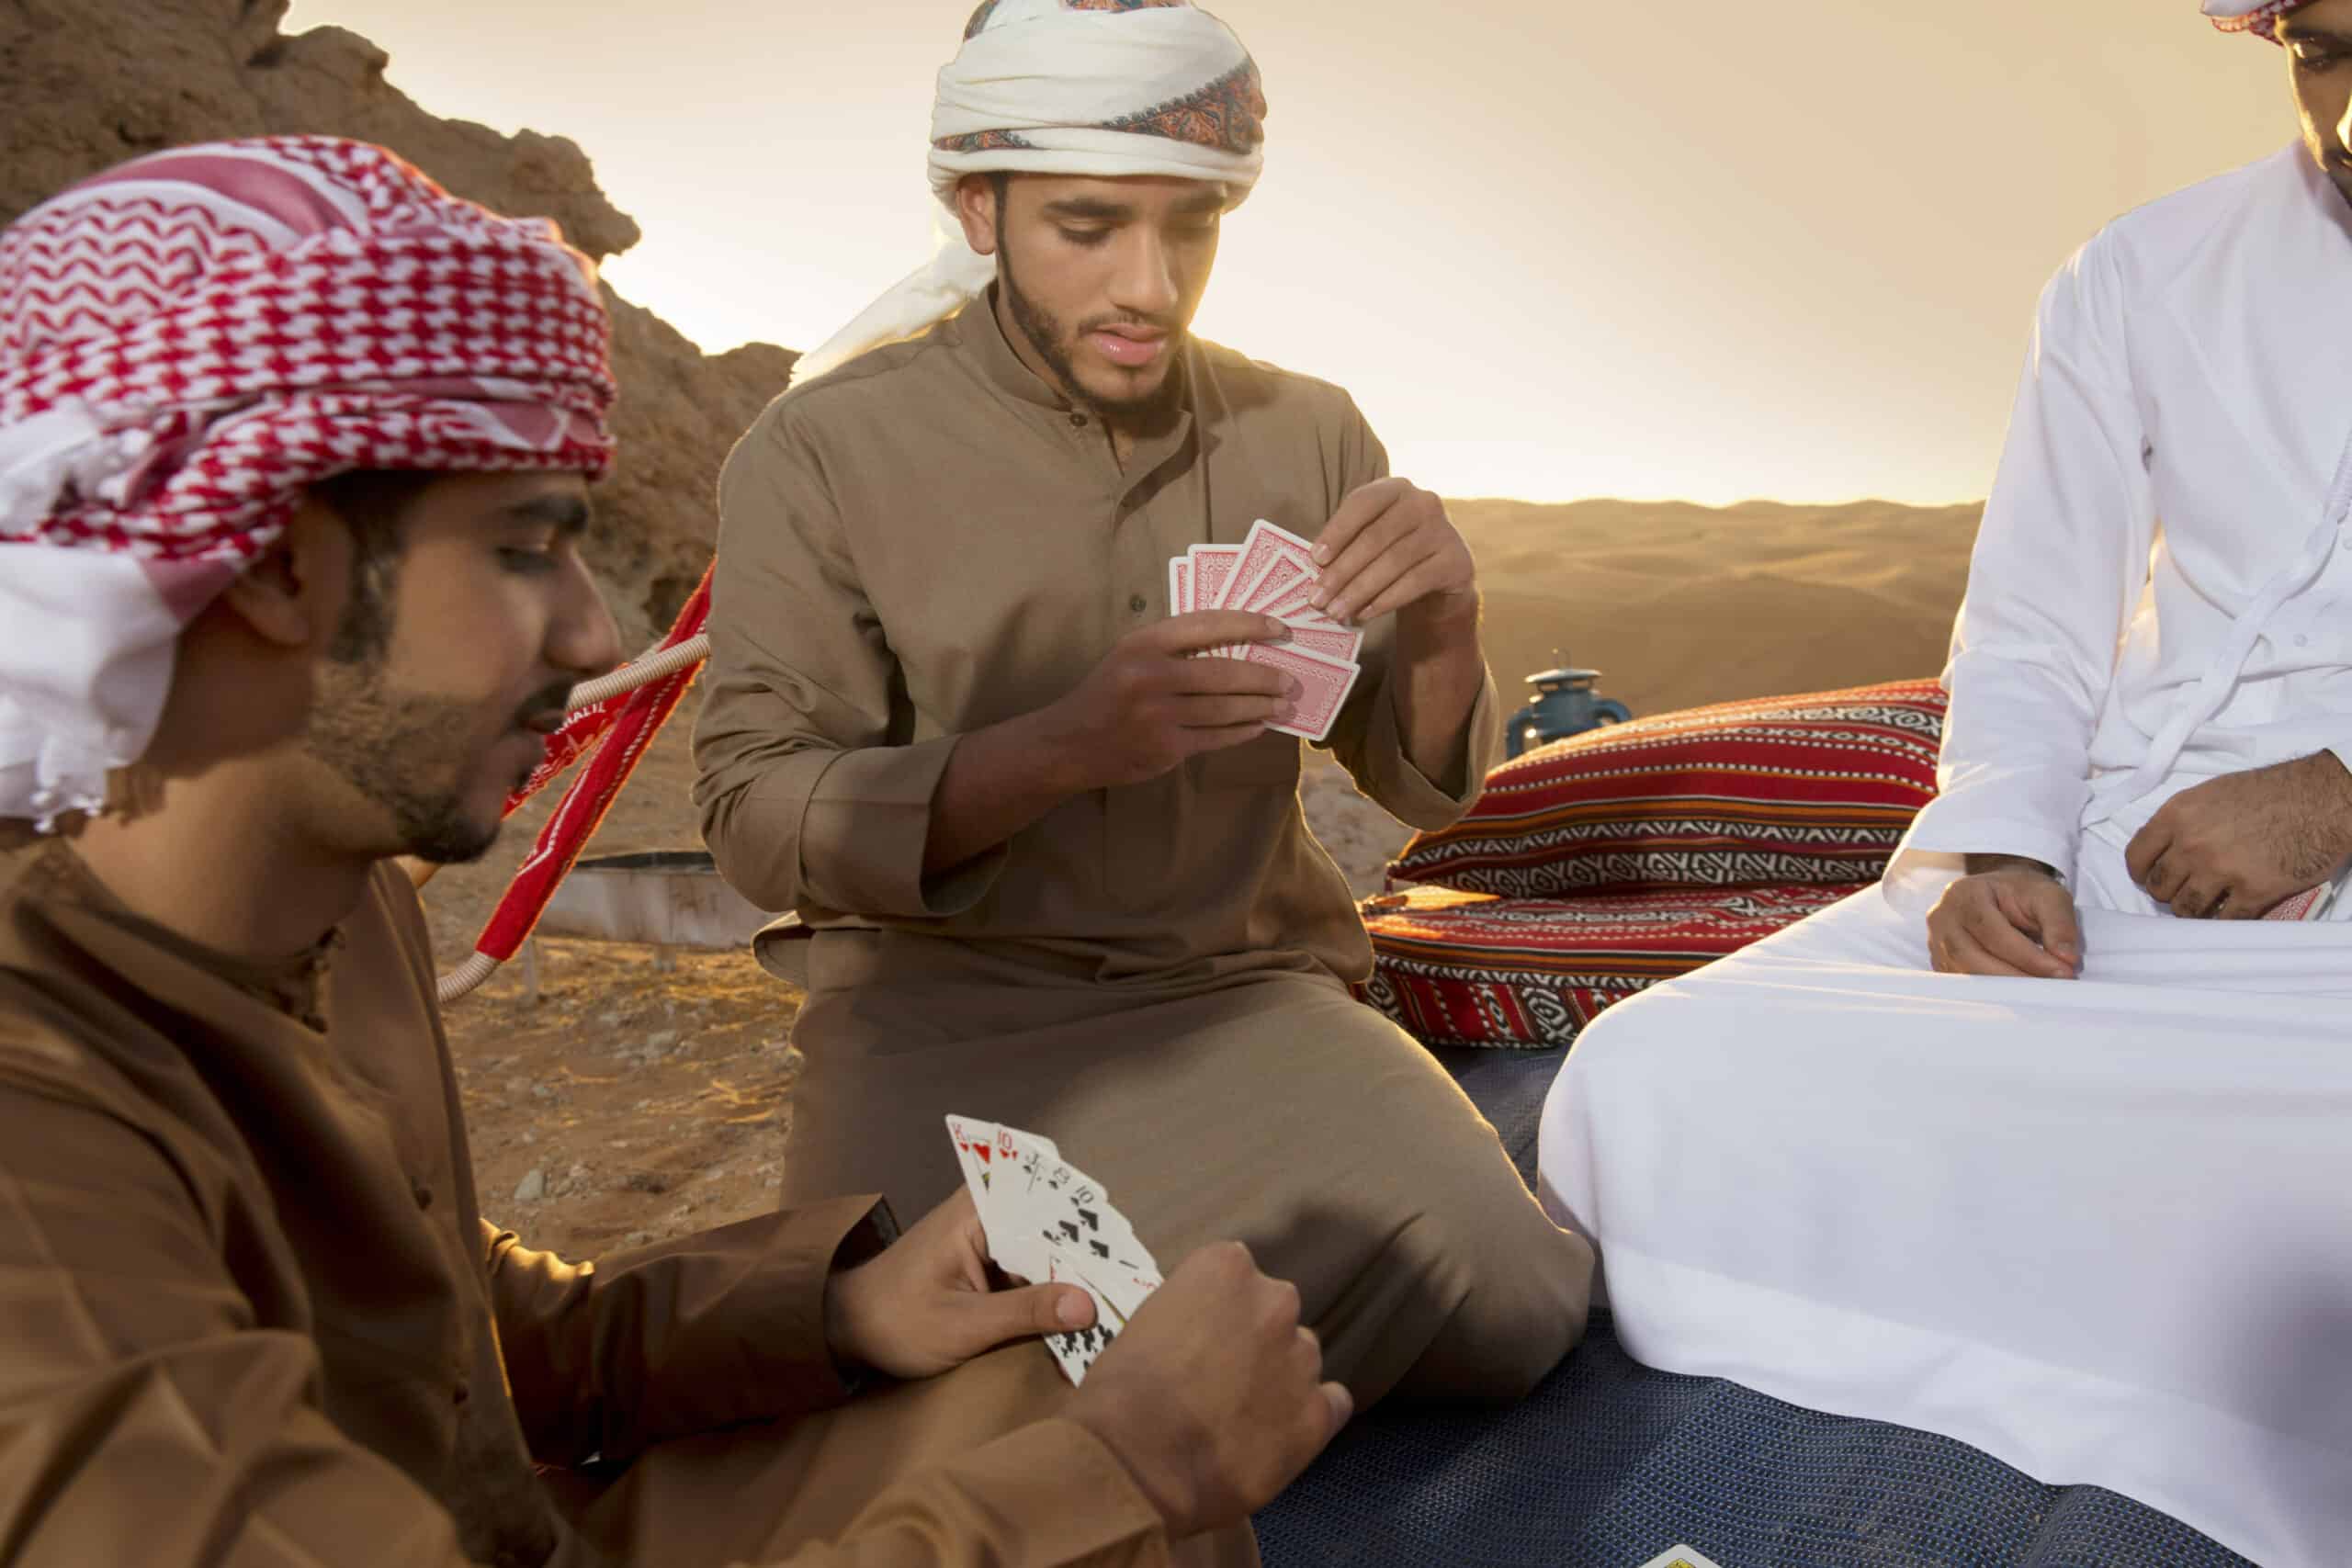 Drei Männer in traditioneller nahöstlicher Kleidung sitzen auf Kissen in einer Wüste und spielen Karten. Ein Mann konzentriert sich auf seine Hand, während die anderen zuschauen. © Fotografie Tomas Rodriguez